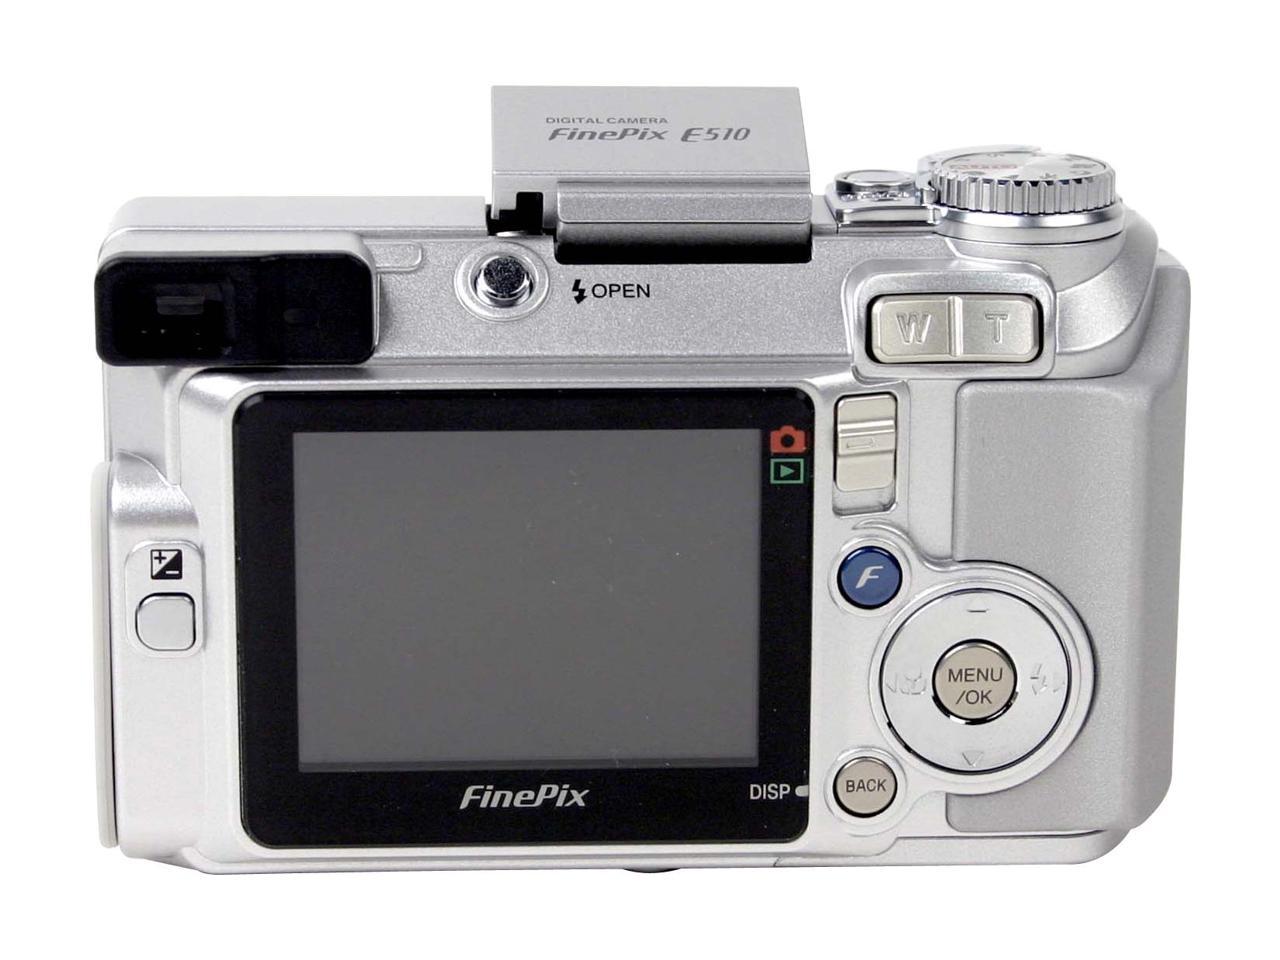 Zuidoost Netto sensor FUJIFILM FinePix E510 Silver 5.2MP 28mm Wide Angle Digital Camera -  Newegg.com